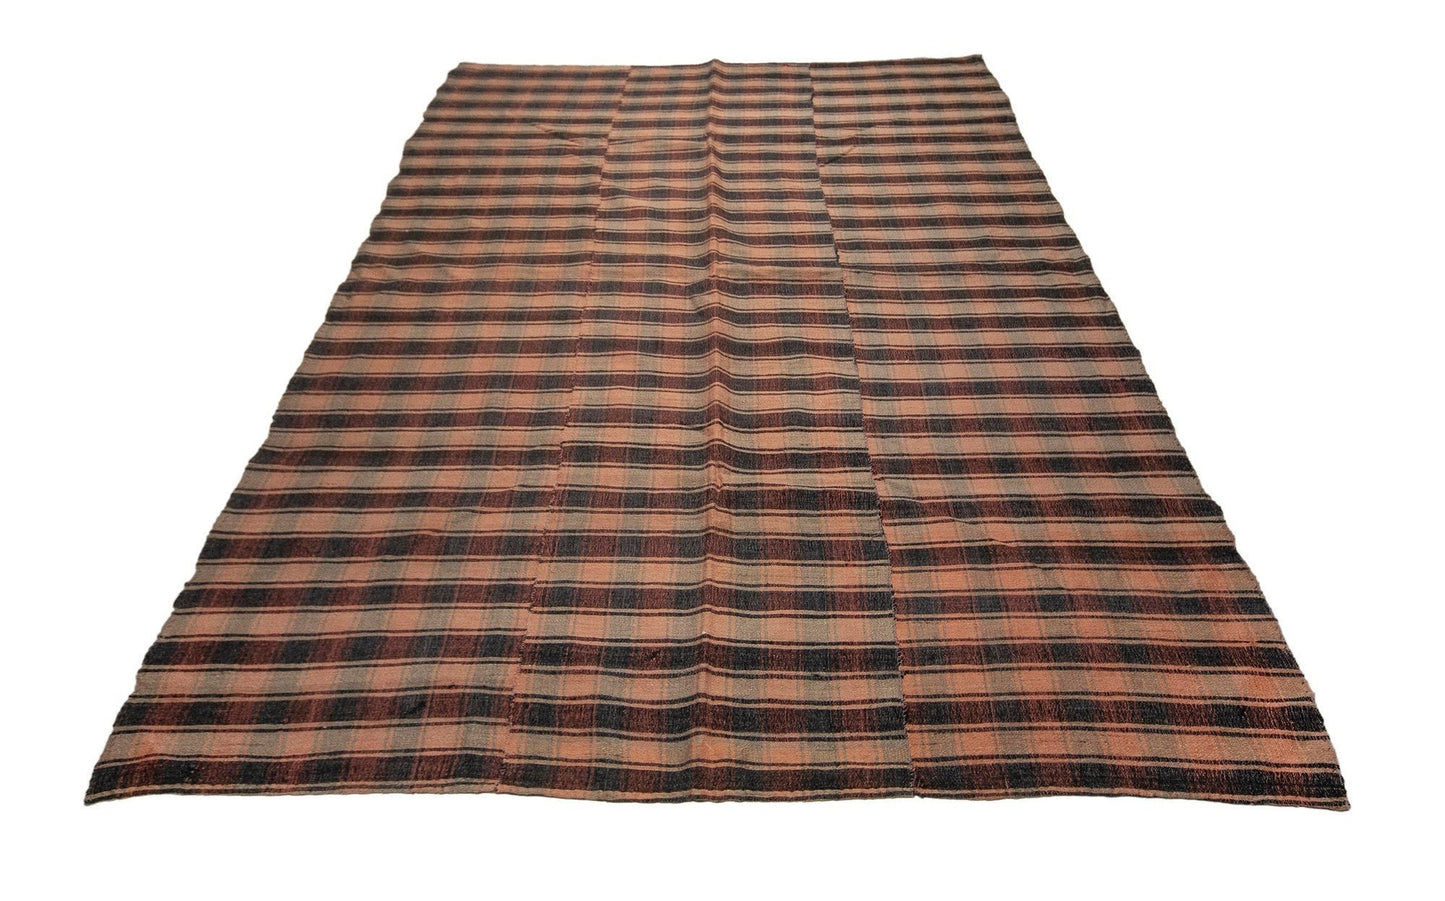 Plaid Primitive Kilim rug, 6x9 Kilim rug, Handmade One of a kind Area rug, Vintage Floor rug, Turkey rug, Rustic rug, Anatolia rug,5513